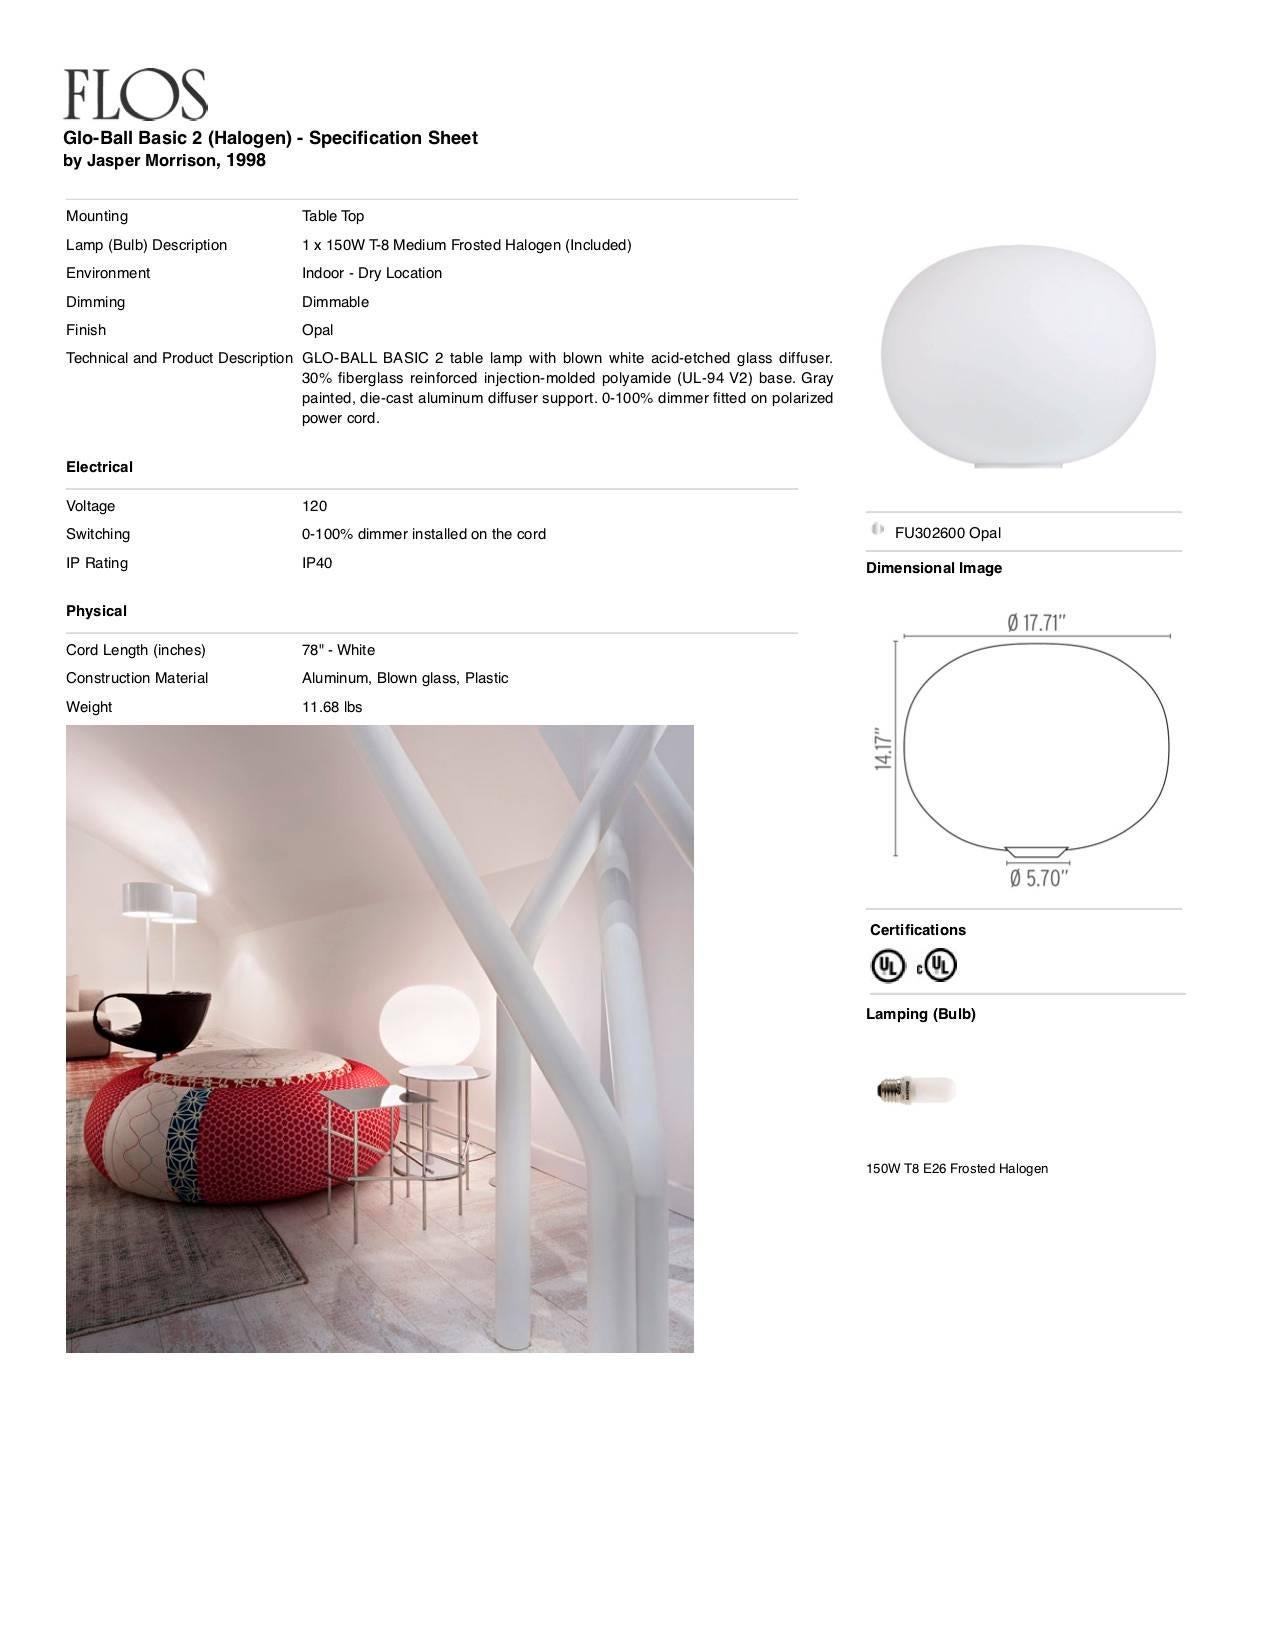 Italian Jasper Morrison Modern Minimalist Glo-Ball Basic 2 Desk Lamp for FLOS For Sale